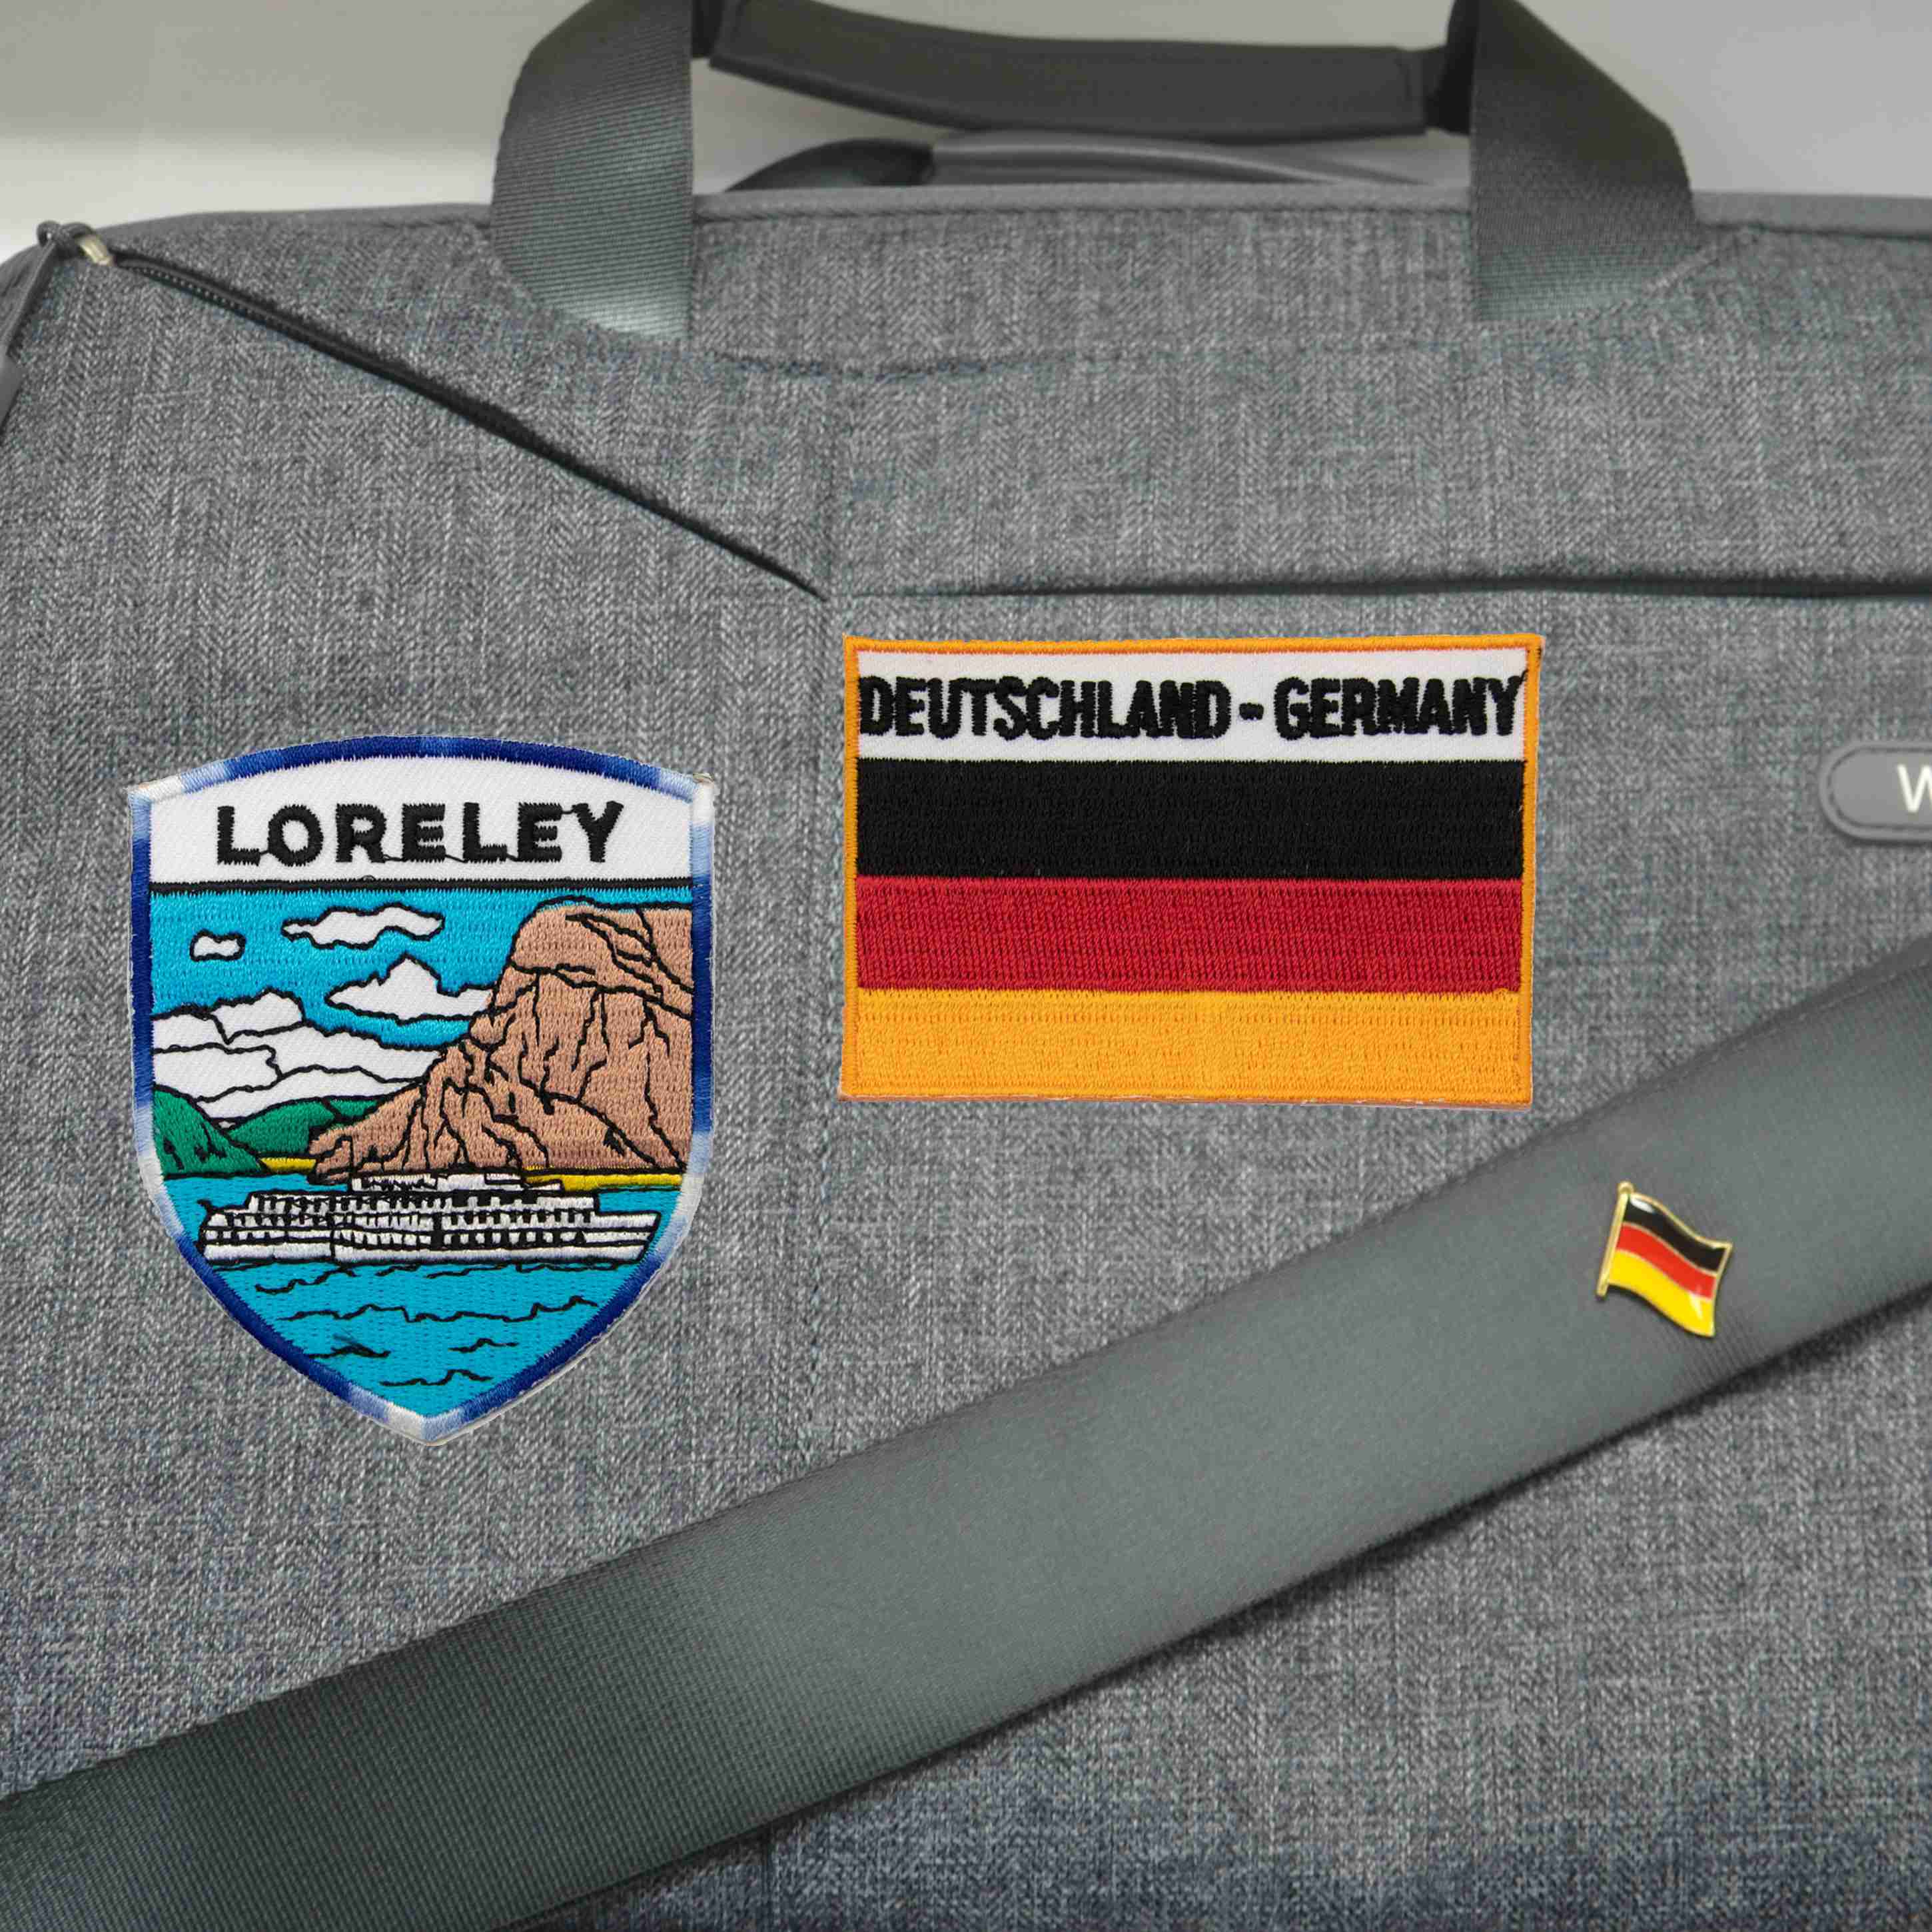 飛行夾克電繡燙布貼 三件組羅蕾萊地標 +德國國旗刺繡+別針 裝飾自黏布貼 布貼 補破貼